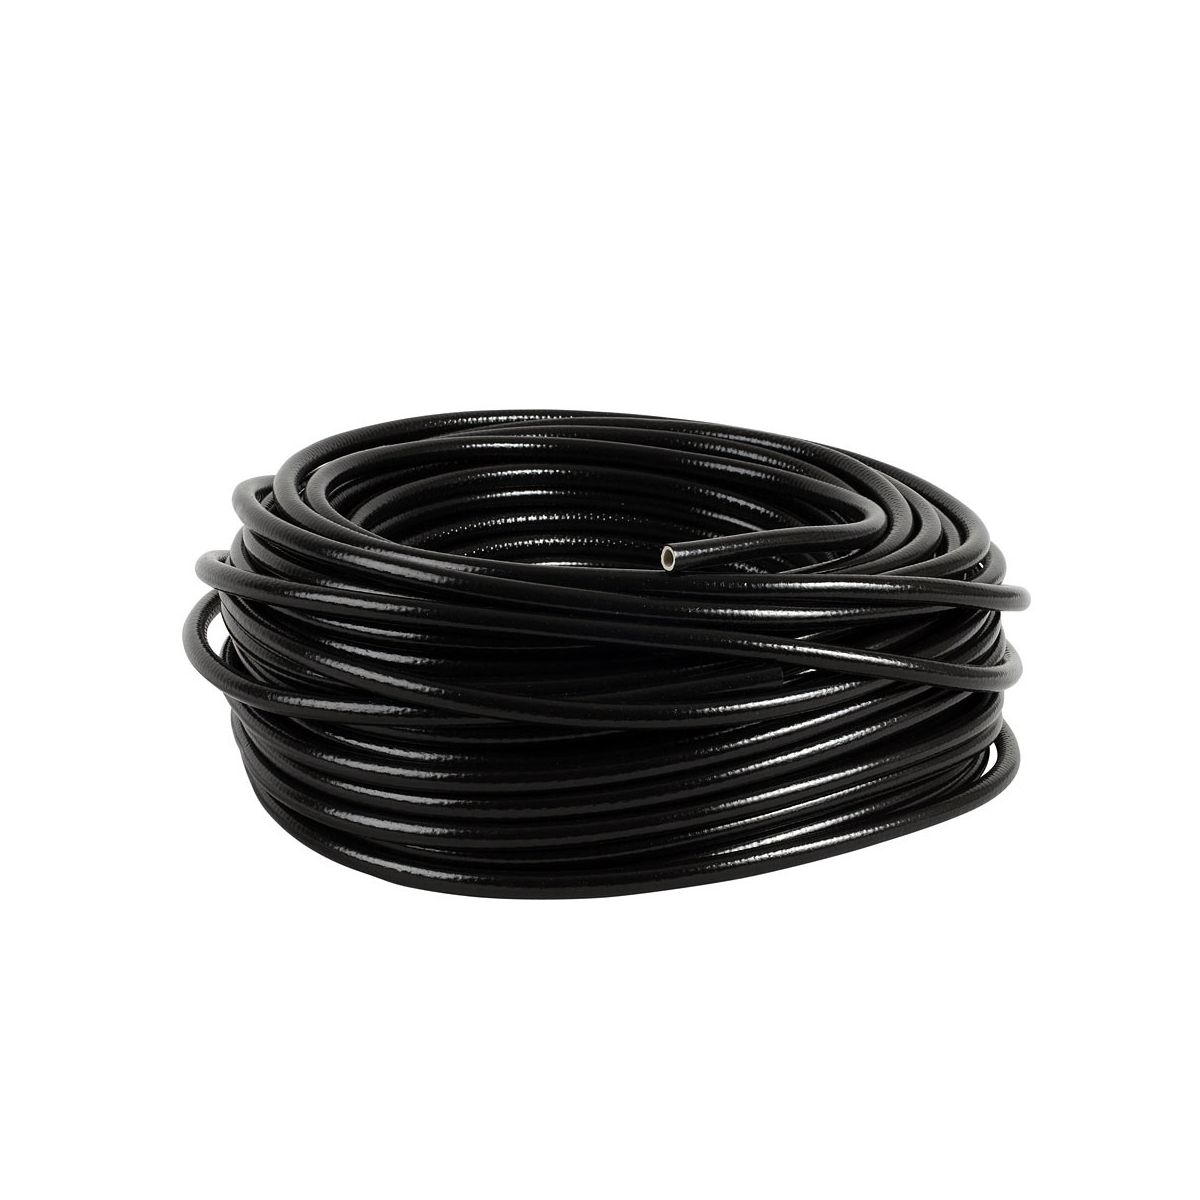 Tuyau souple PVC noir - Renforcé - Diam: 10mm - Long: 50m